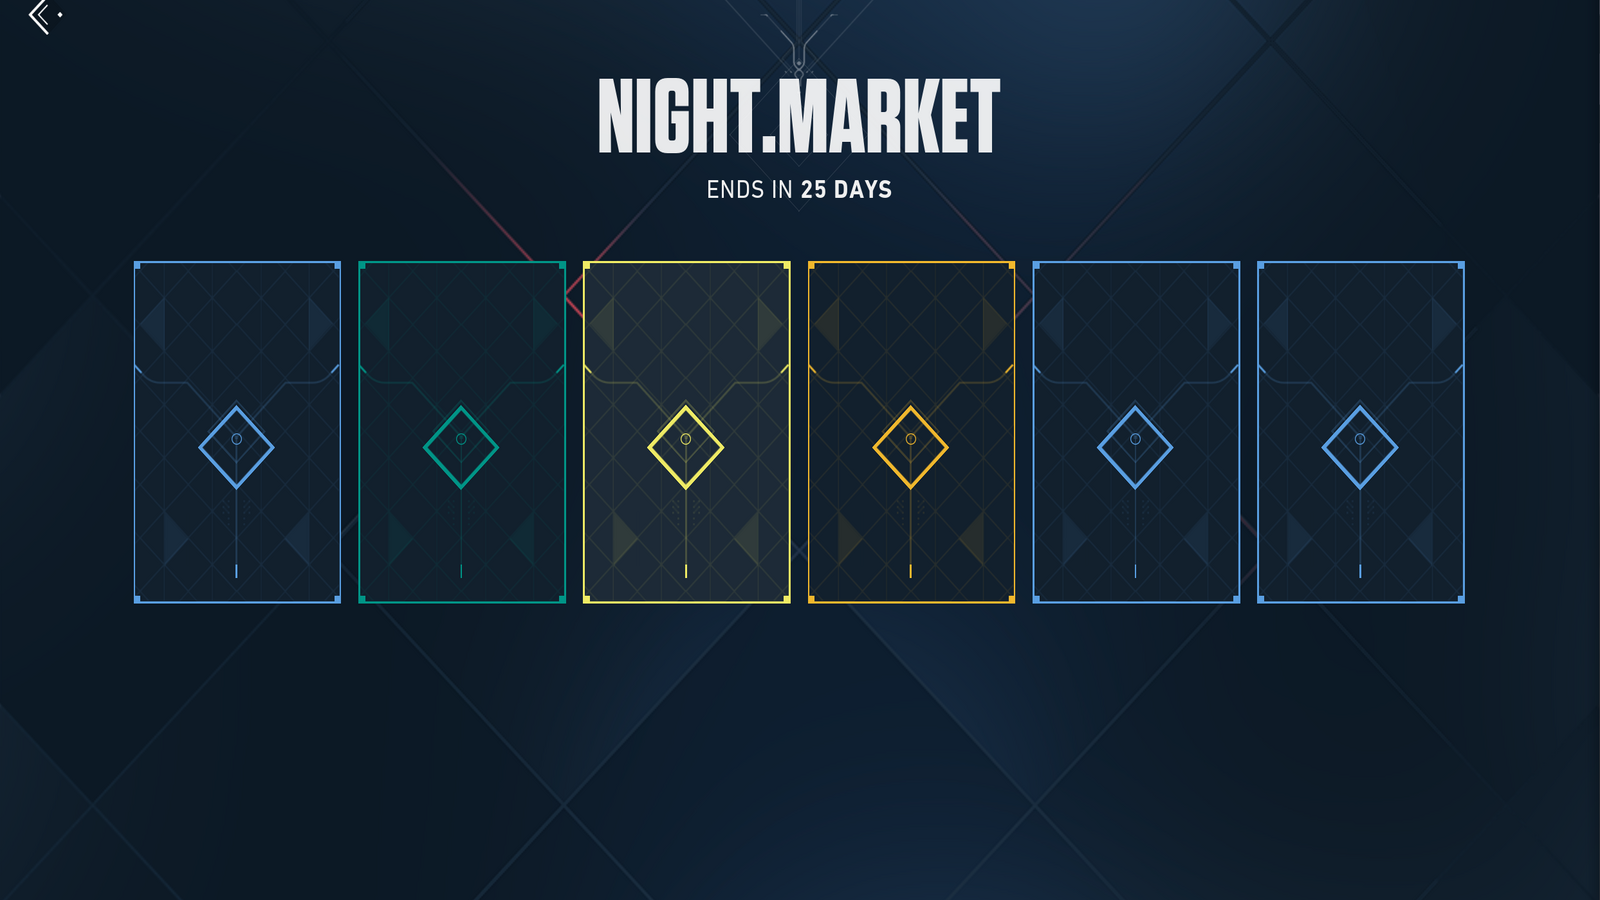 Скриншот нового ночного рынка, каждая кожа все еще скрыта за открытой картой